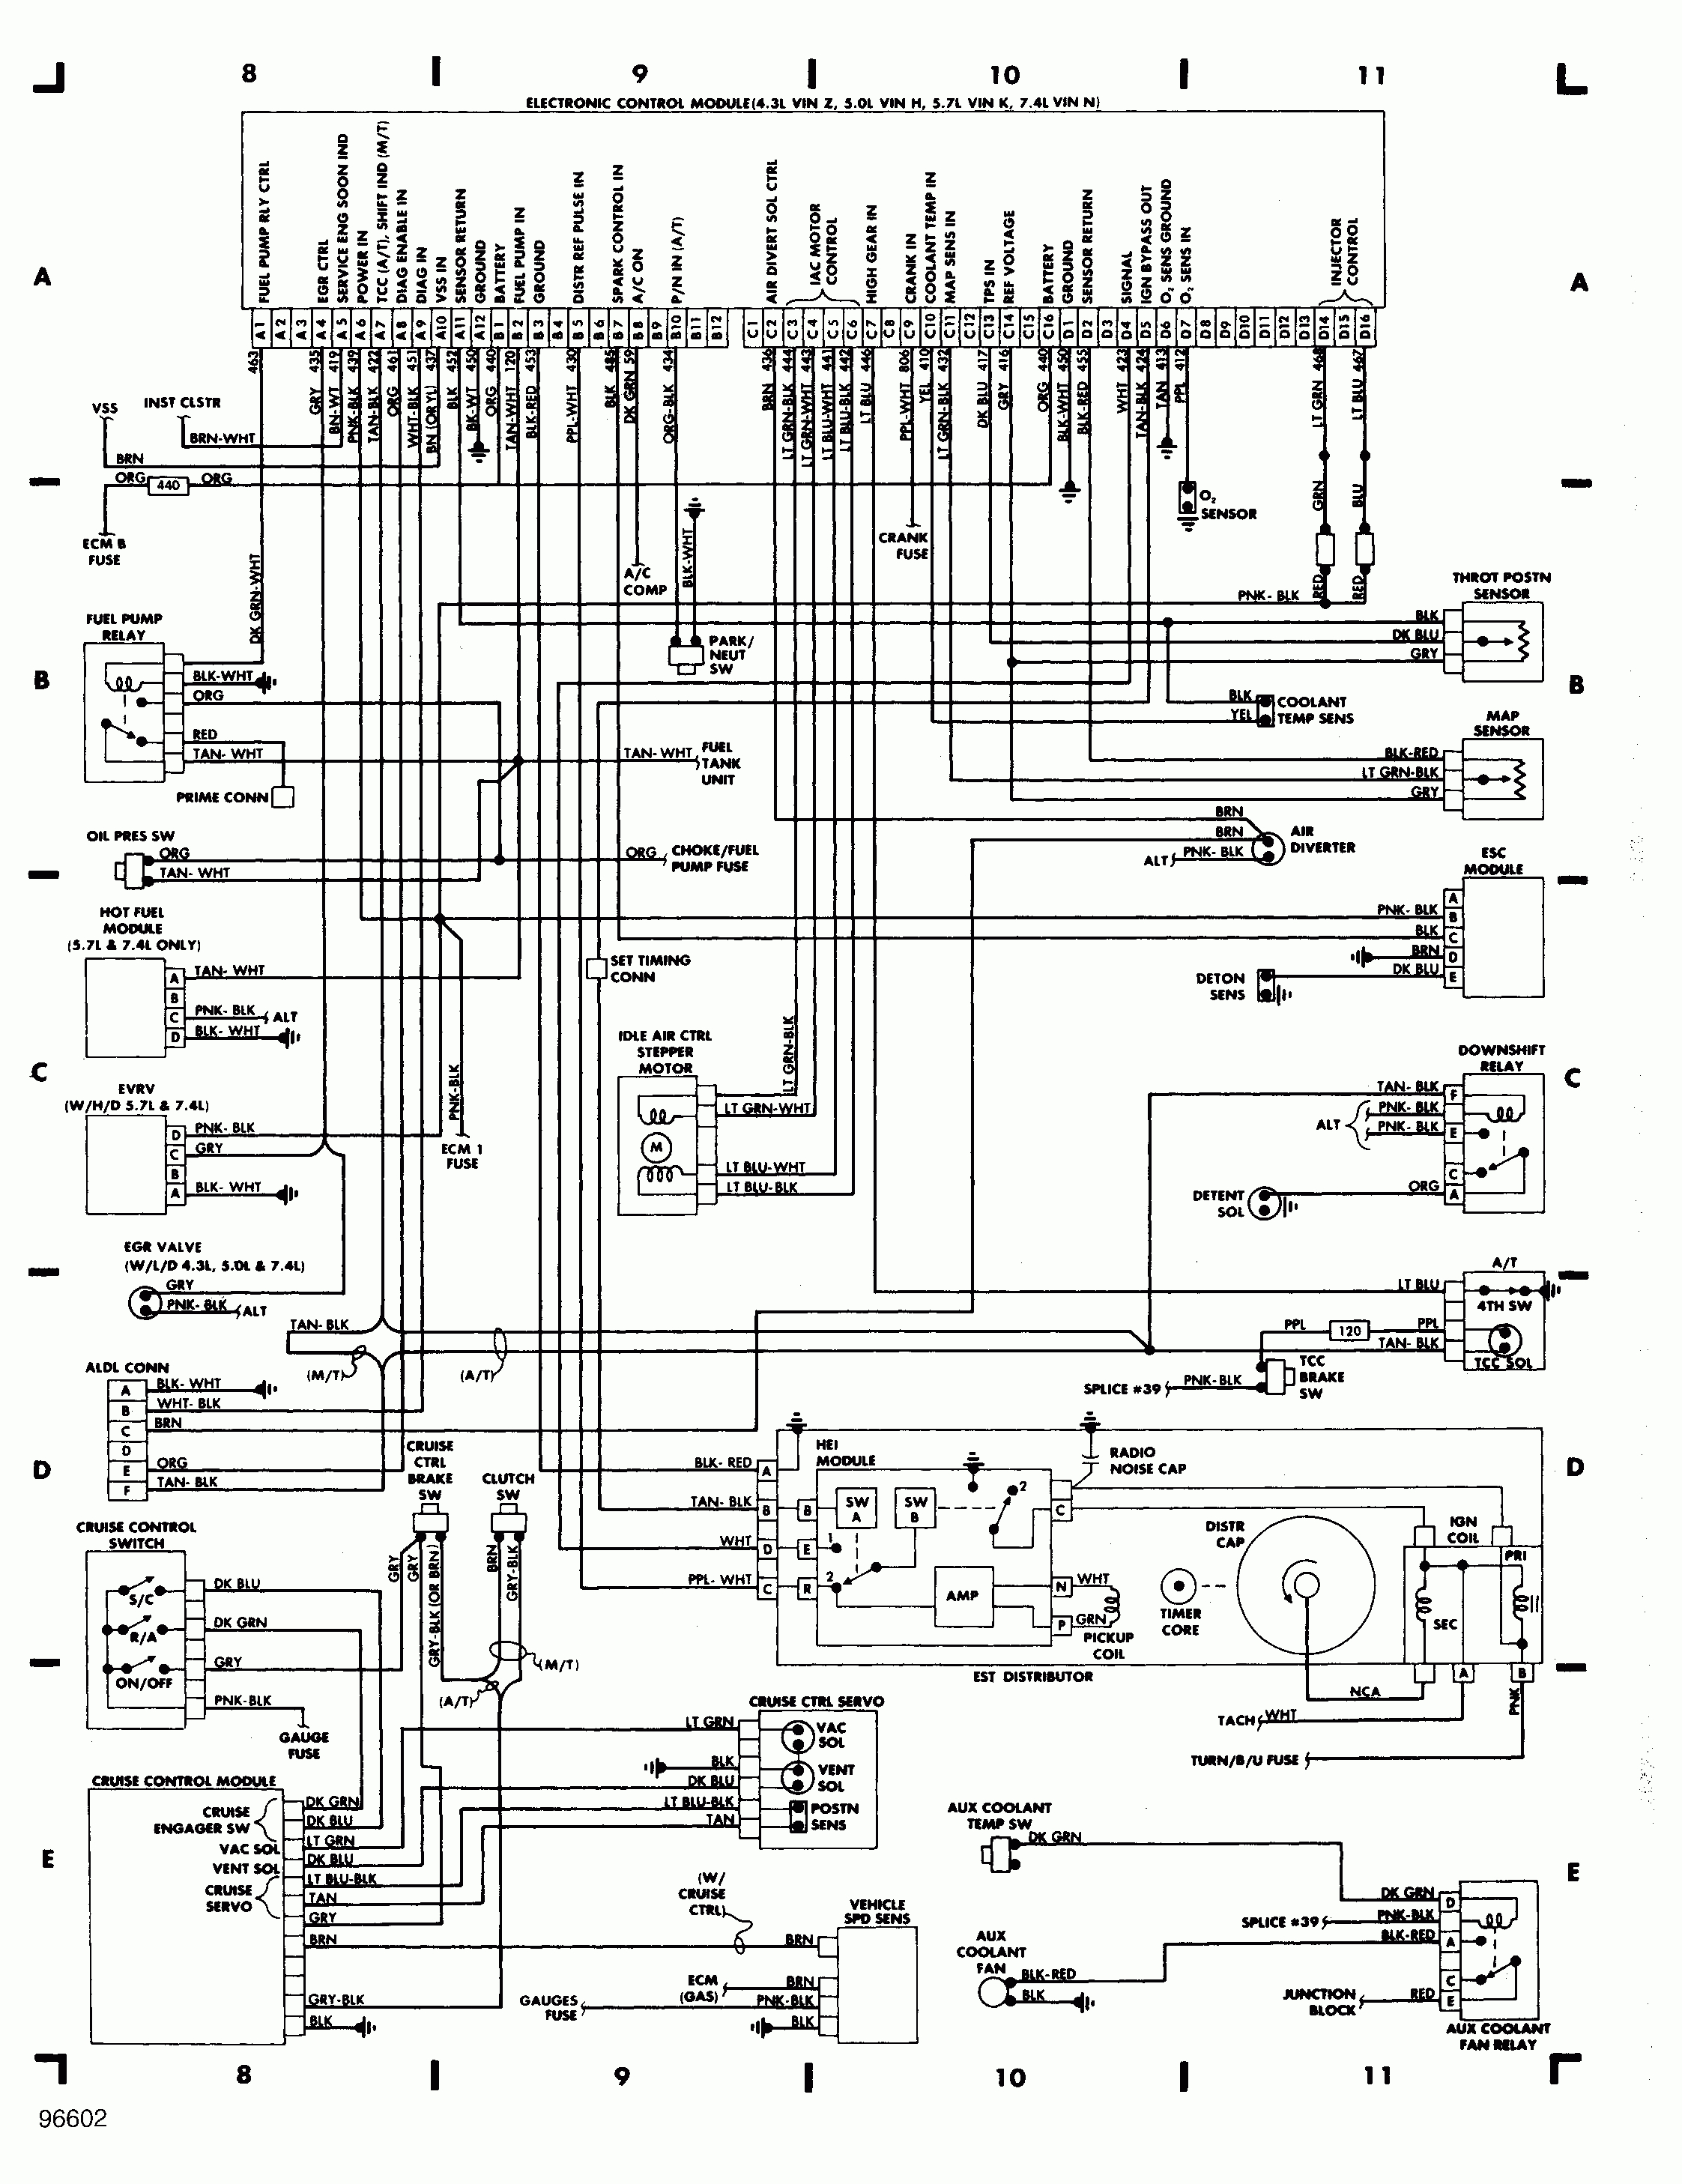 Chevy 350 Wiring Diagram | Wiring Diagram - Chevy 350 Wiring Diagram